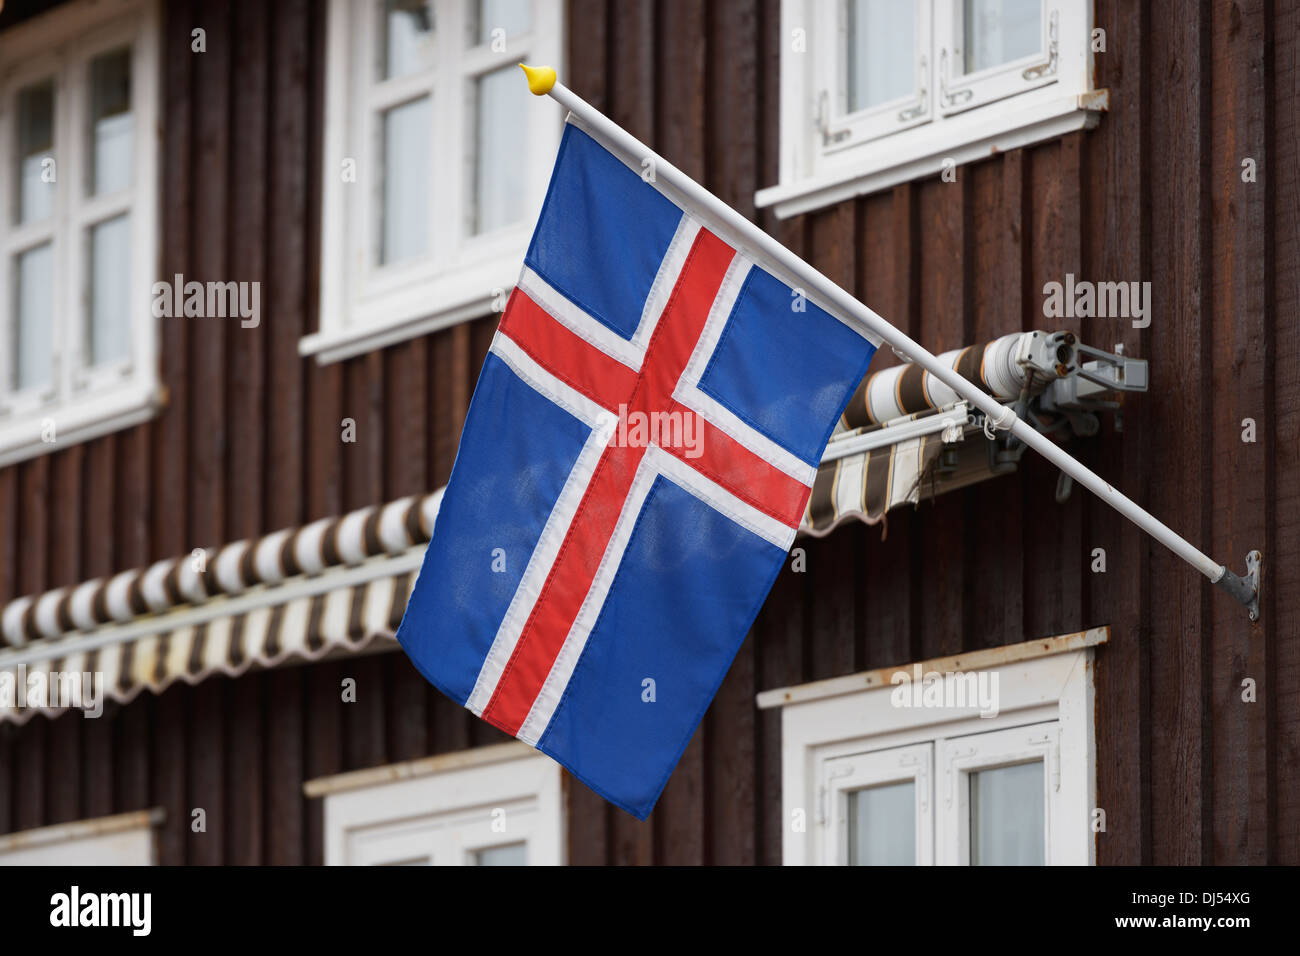 Bandera de Islandia en una casa; Stykisholmur, Snaefellsnes, Islandia Foto de stock